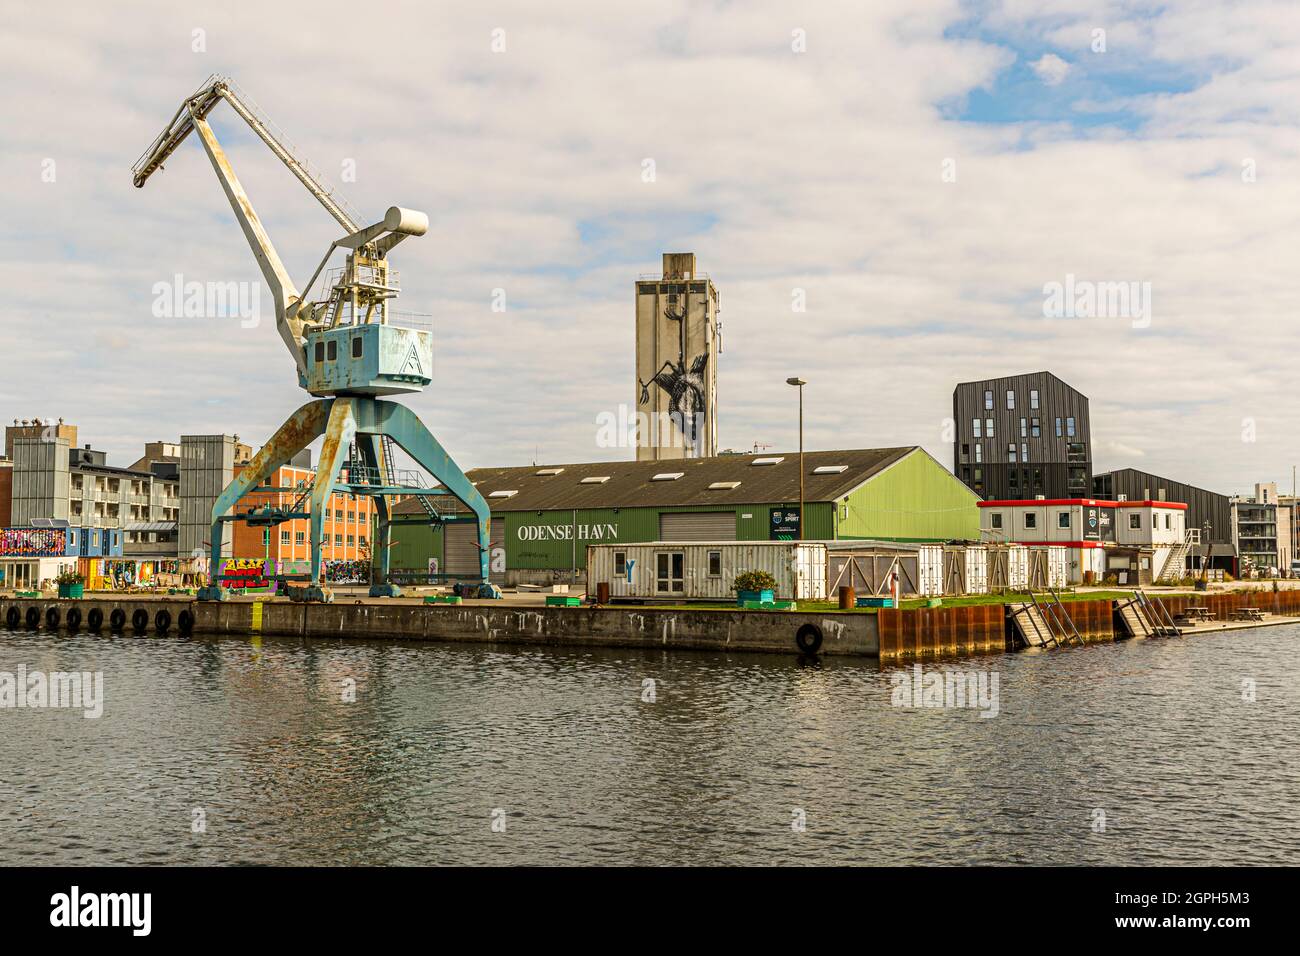 Port of Odense, Denmark Stock Photo